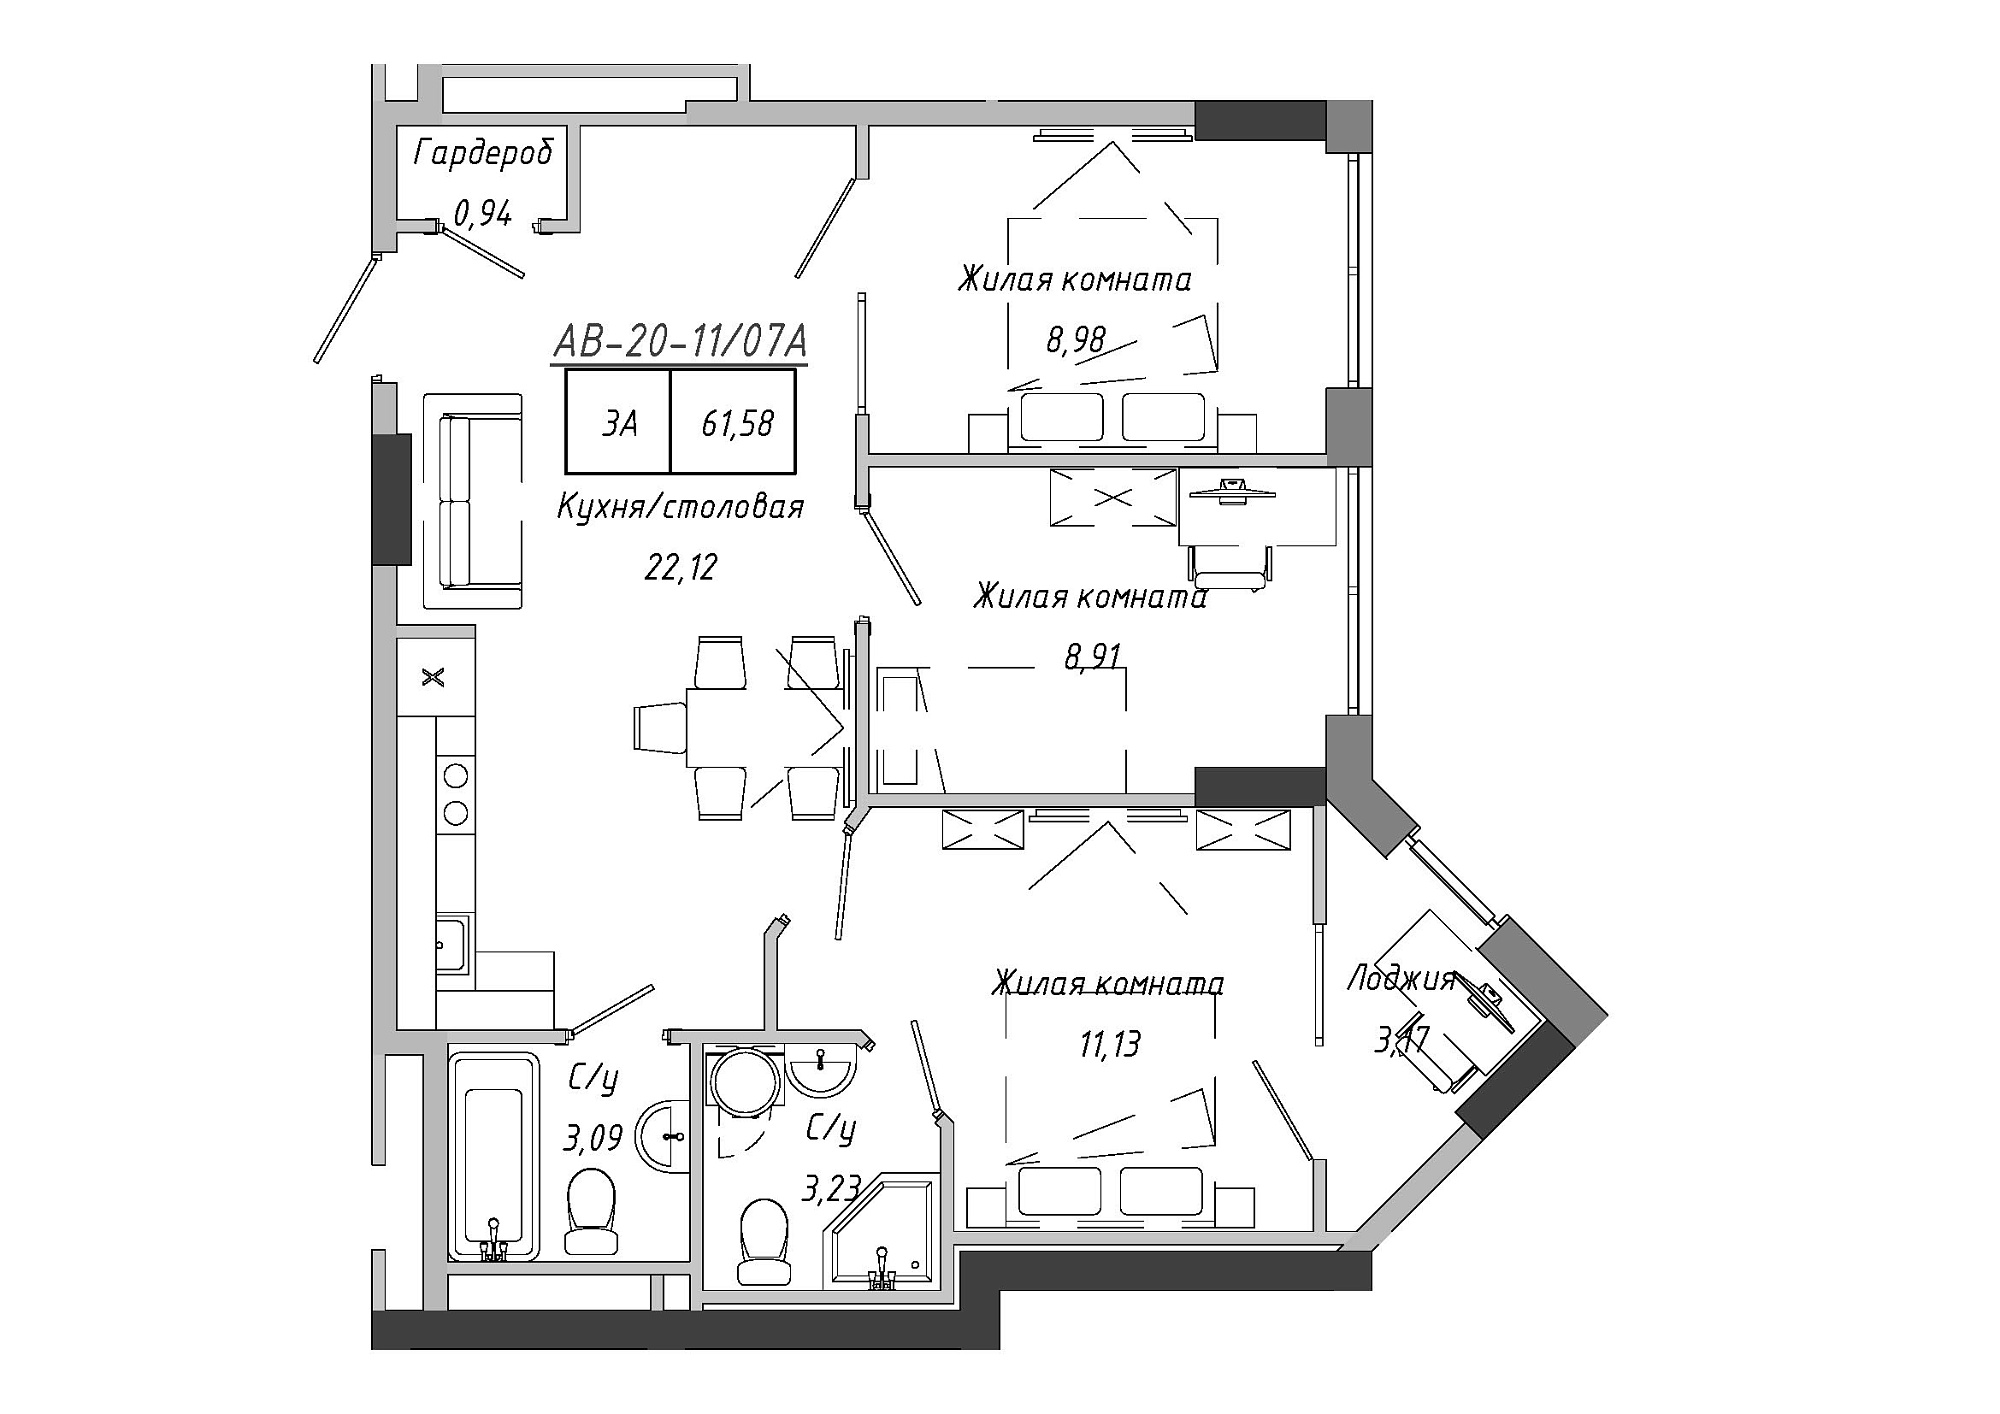 Планировка 3-к квартира площей 62.67м2, AB-20-11/0007а.